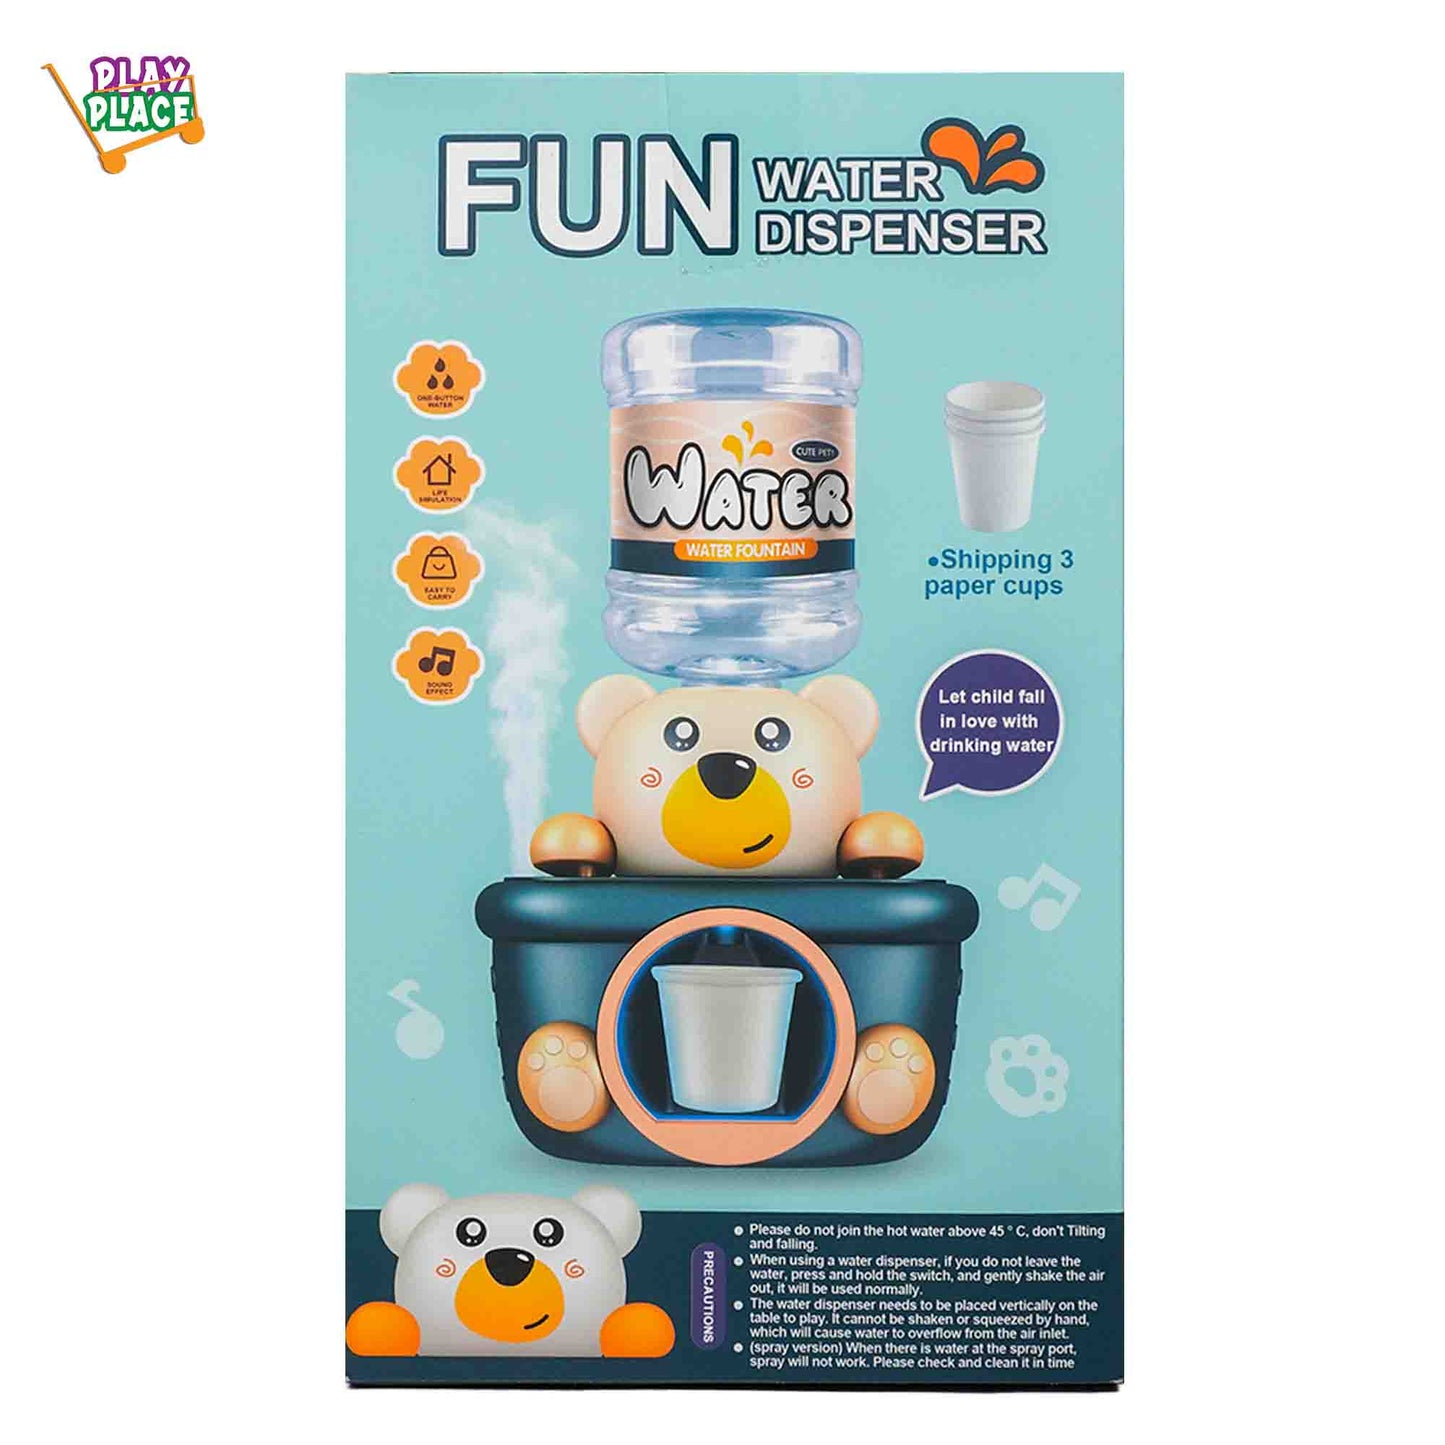 FUN Bear Water Dispenser Kit Toy for Kids